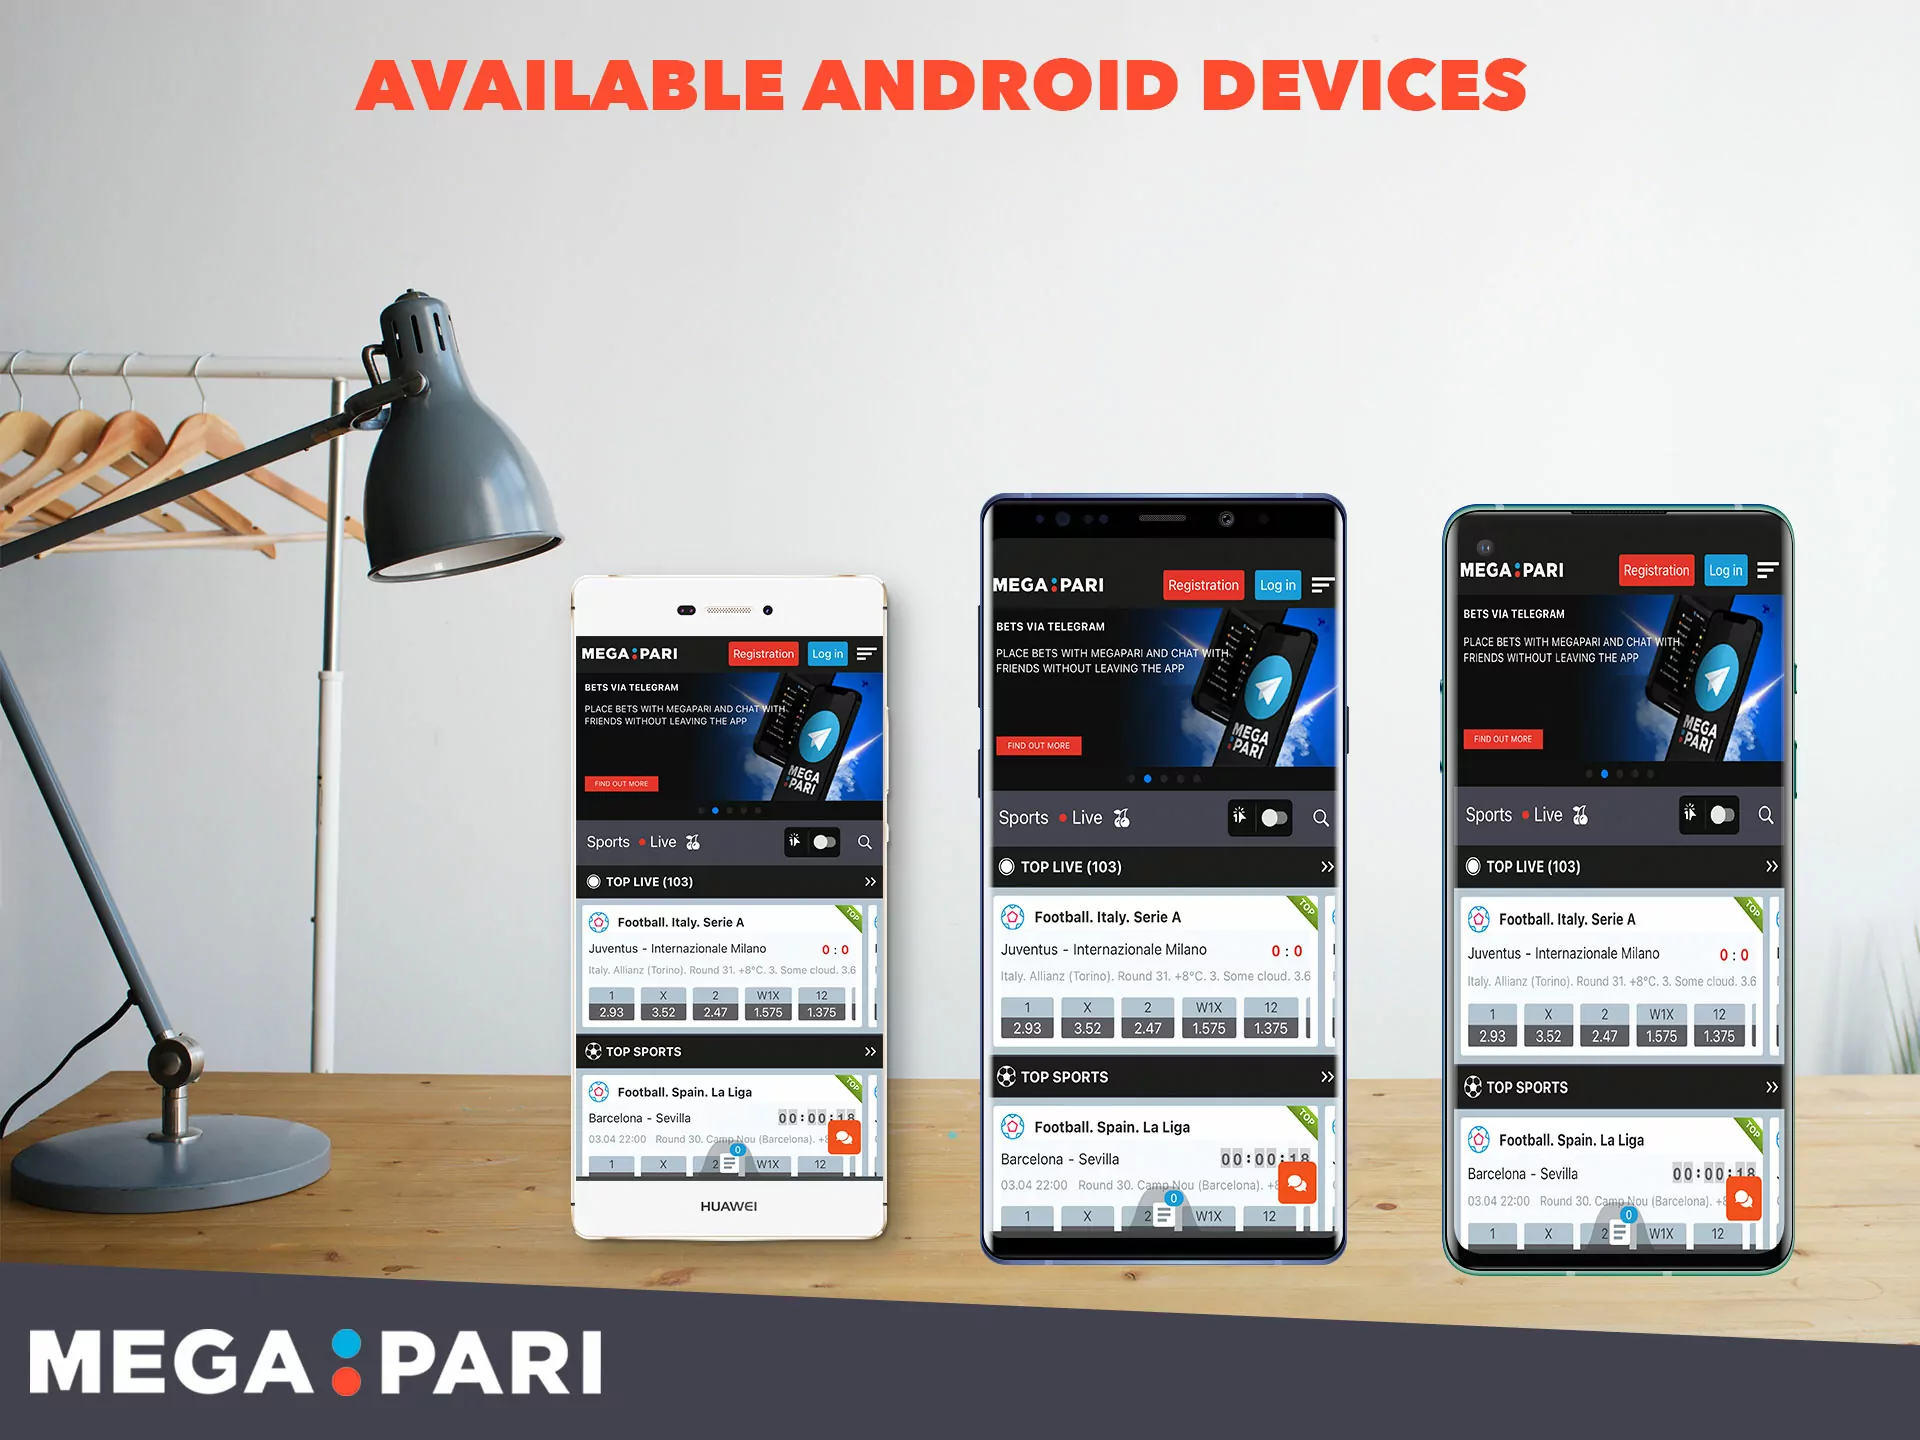 Quais modelos de smartphones Android suportam o aplicativo Megapari